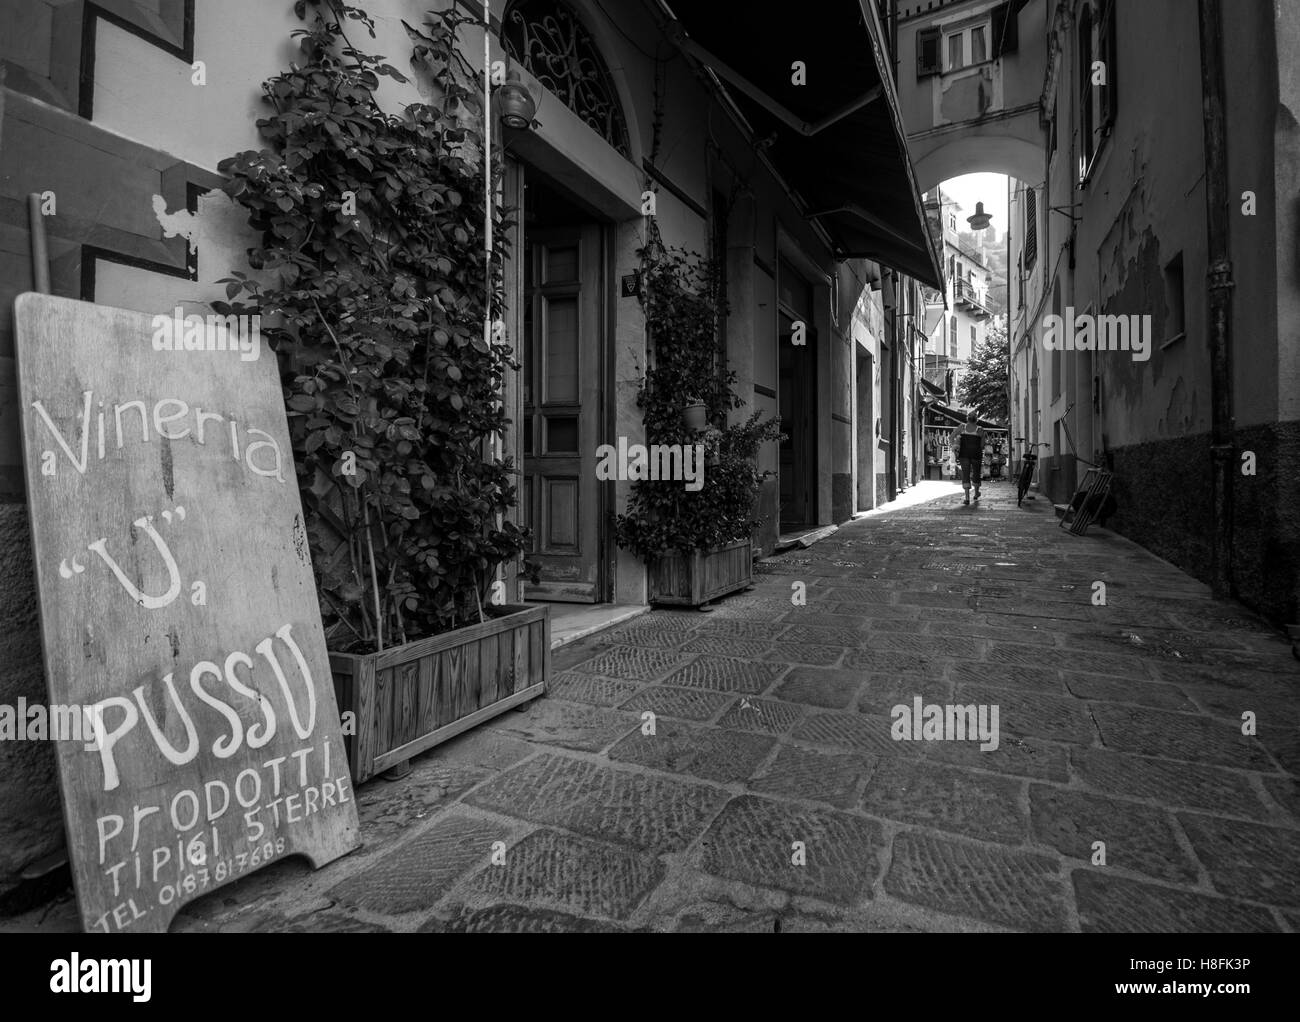 Un shopfront in tradizionale stile architettonico e la passerella, Cinque Terre, Italia, Settembre. Convertito in bianco e nero Foto Stock